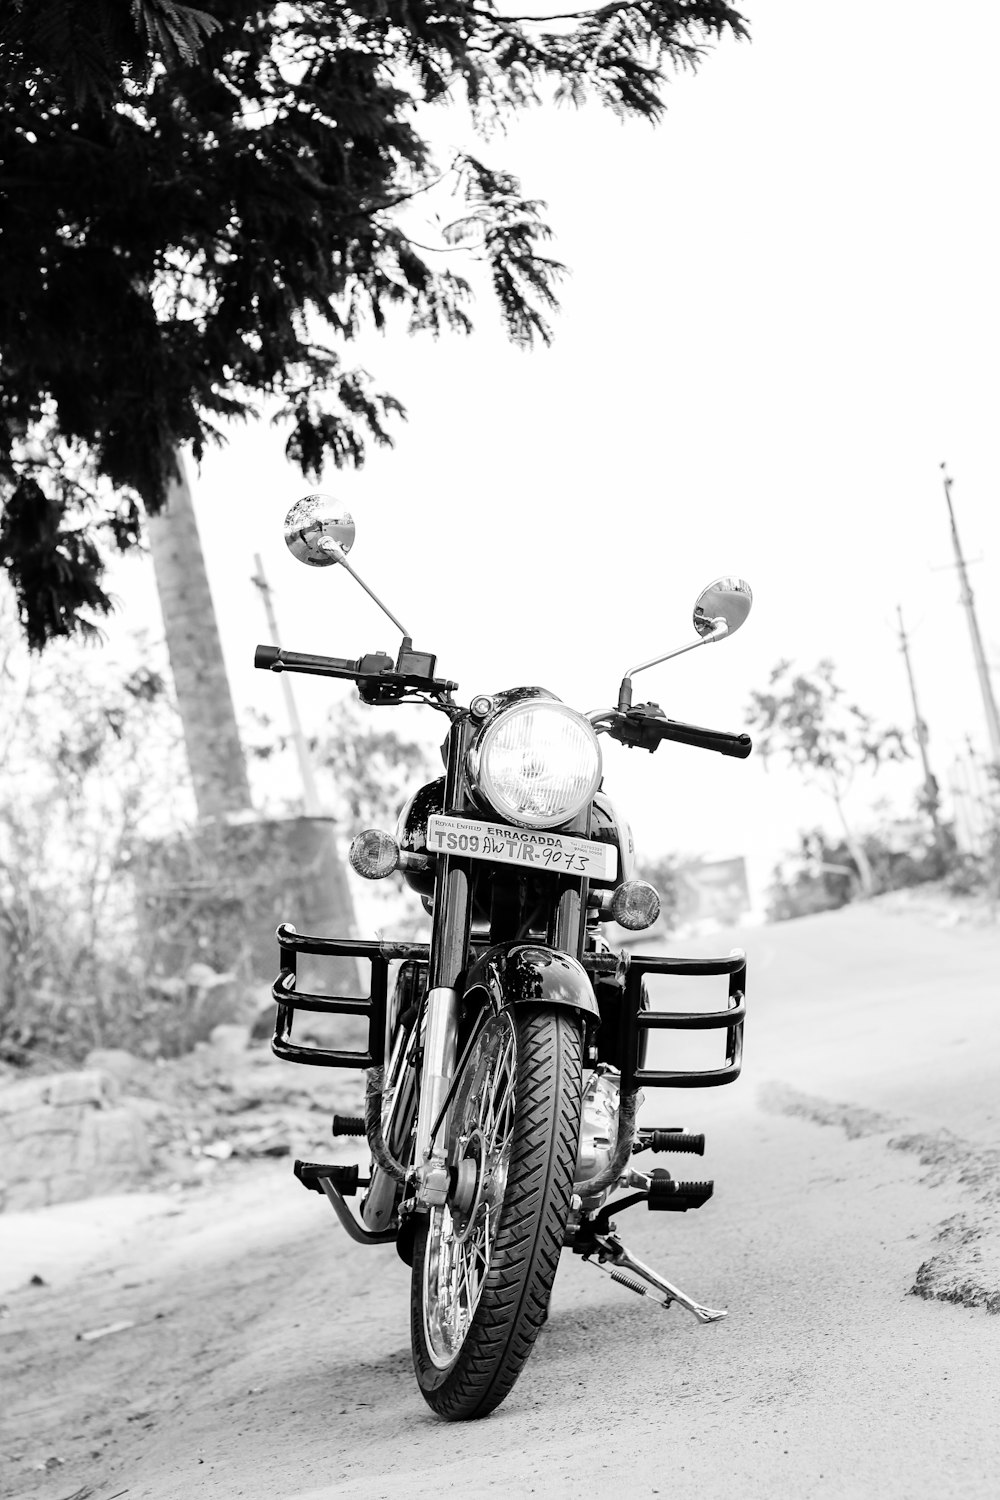 Foto en escala de grises de una motocicleta estacionada en la carretera